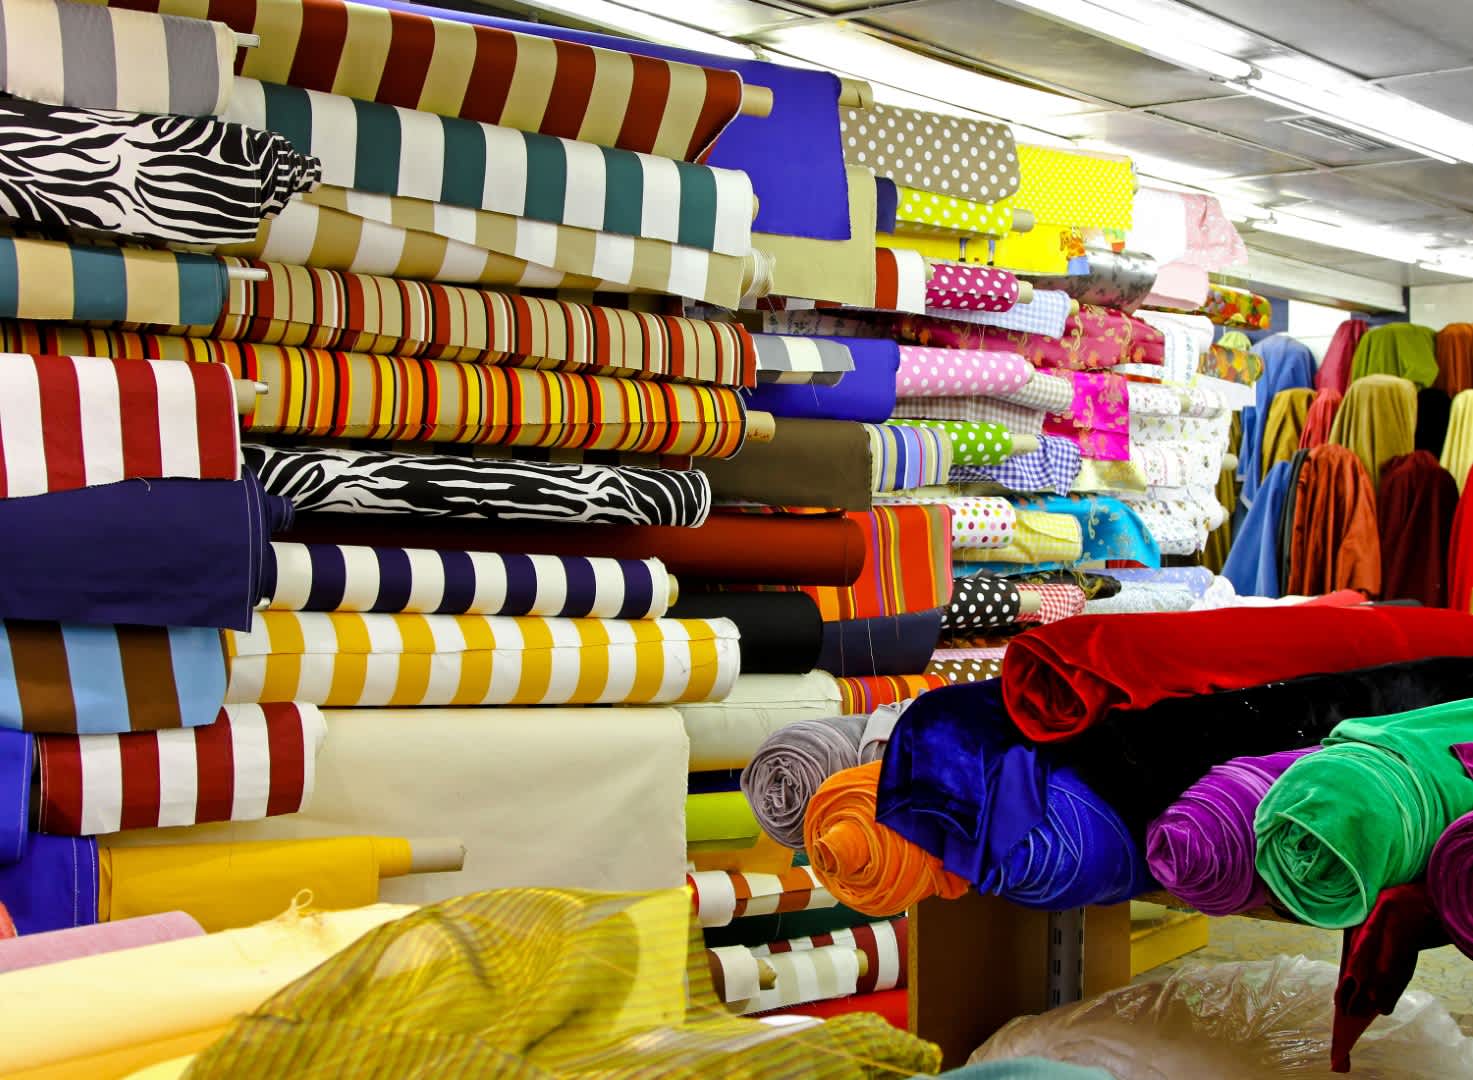 Текстильная промышленность. Текстильные товары. Текстильная отрасль. Легкая промышленность текстиль. Текстиля магазин тканей